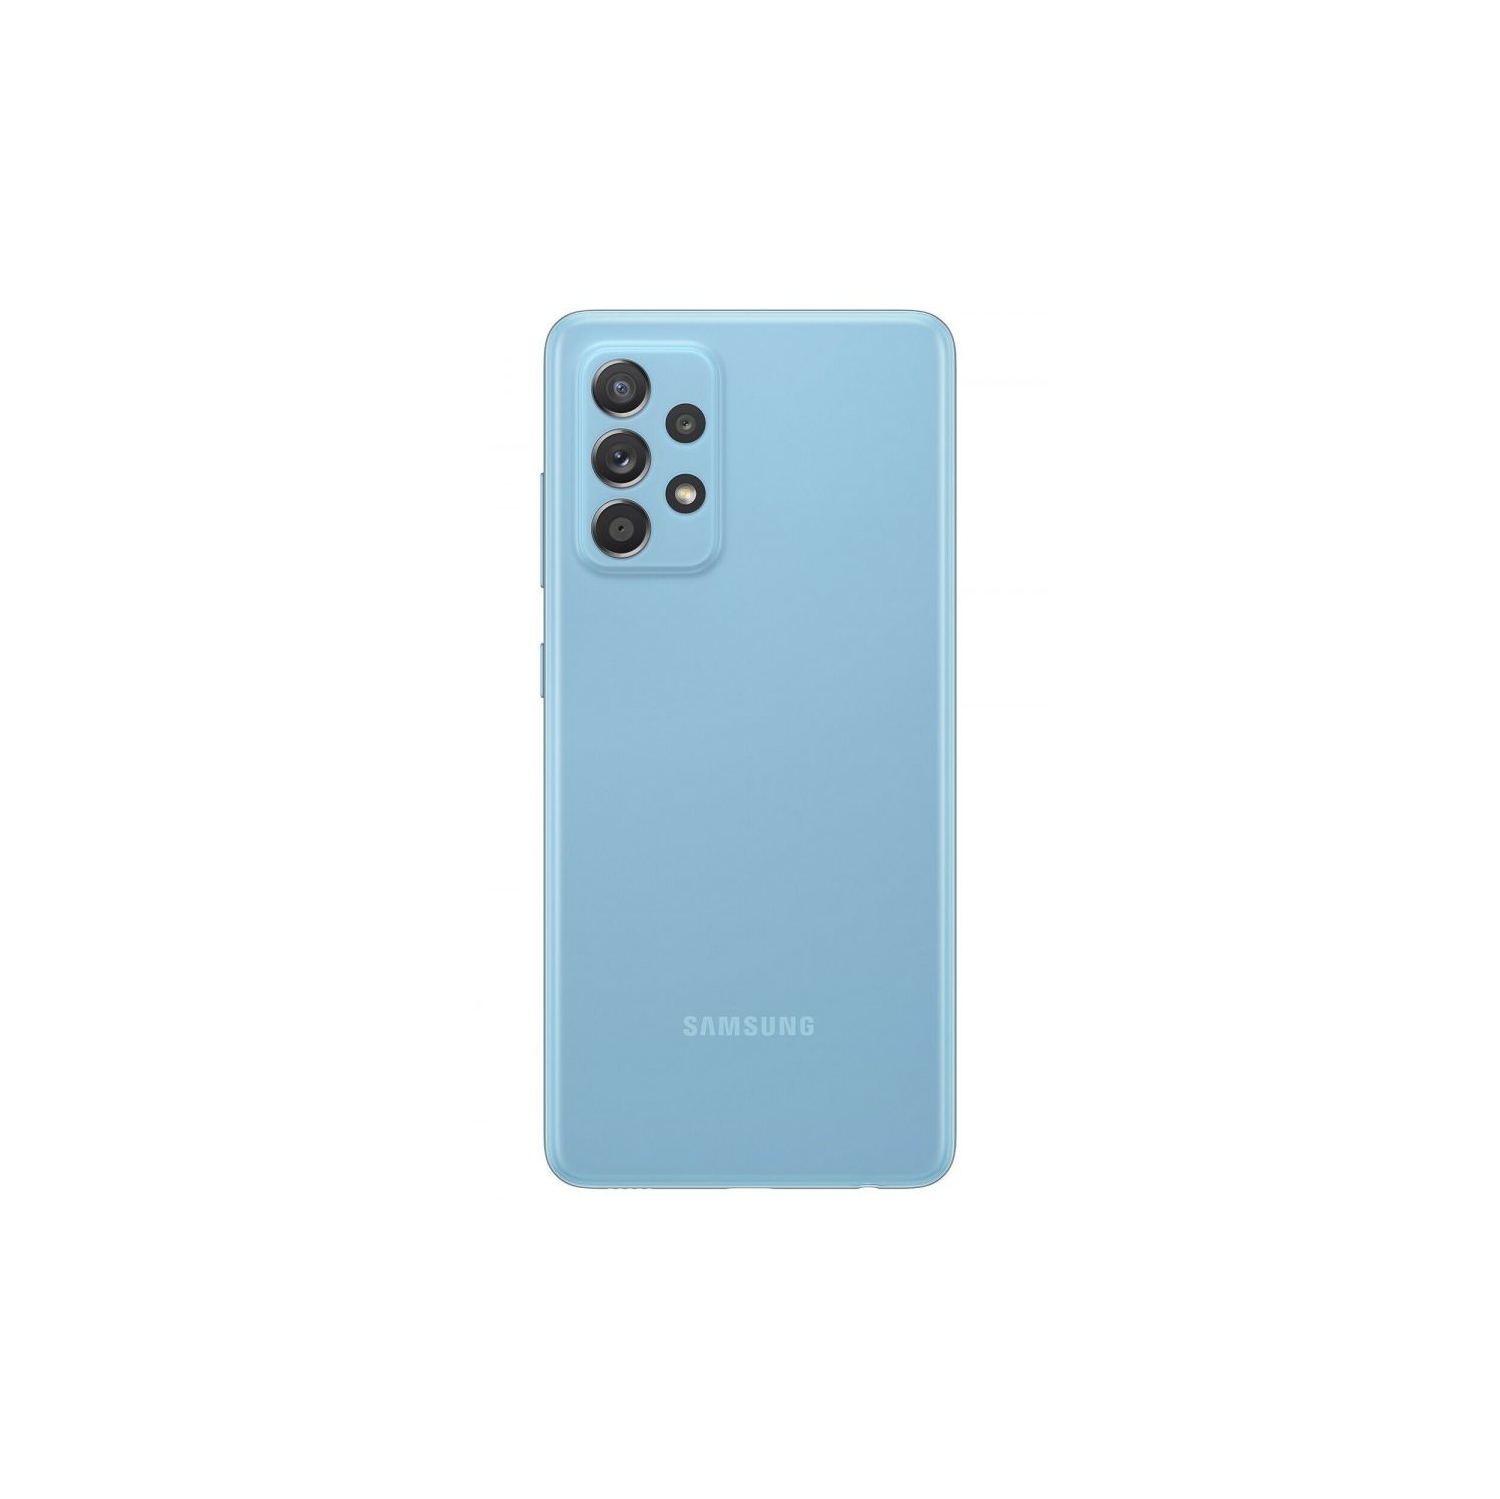 Samsung Galaxy A52 (A525F DS) (Dual SIM, 256GB/8GB, Awesome Blue) - Brand New